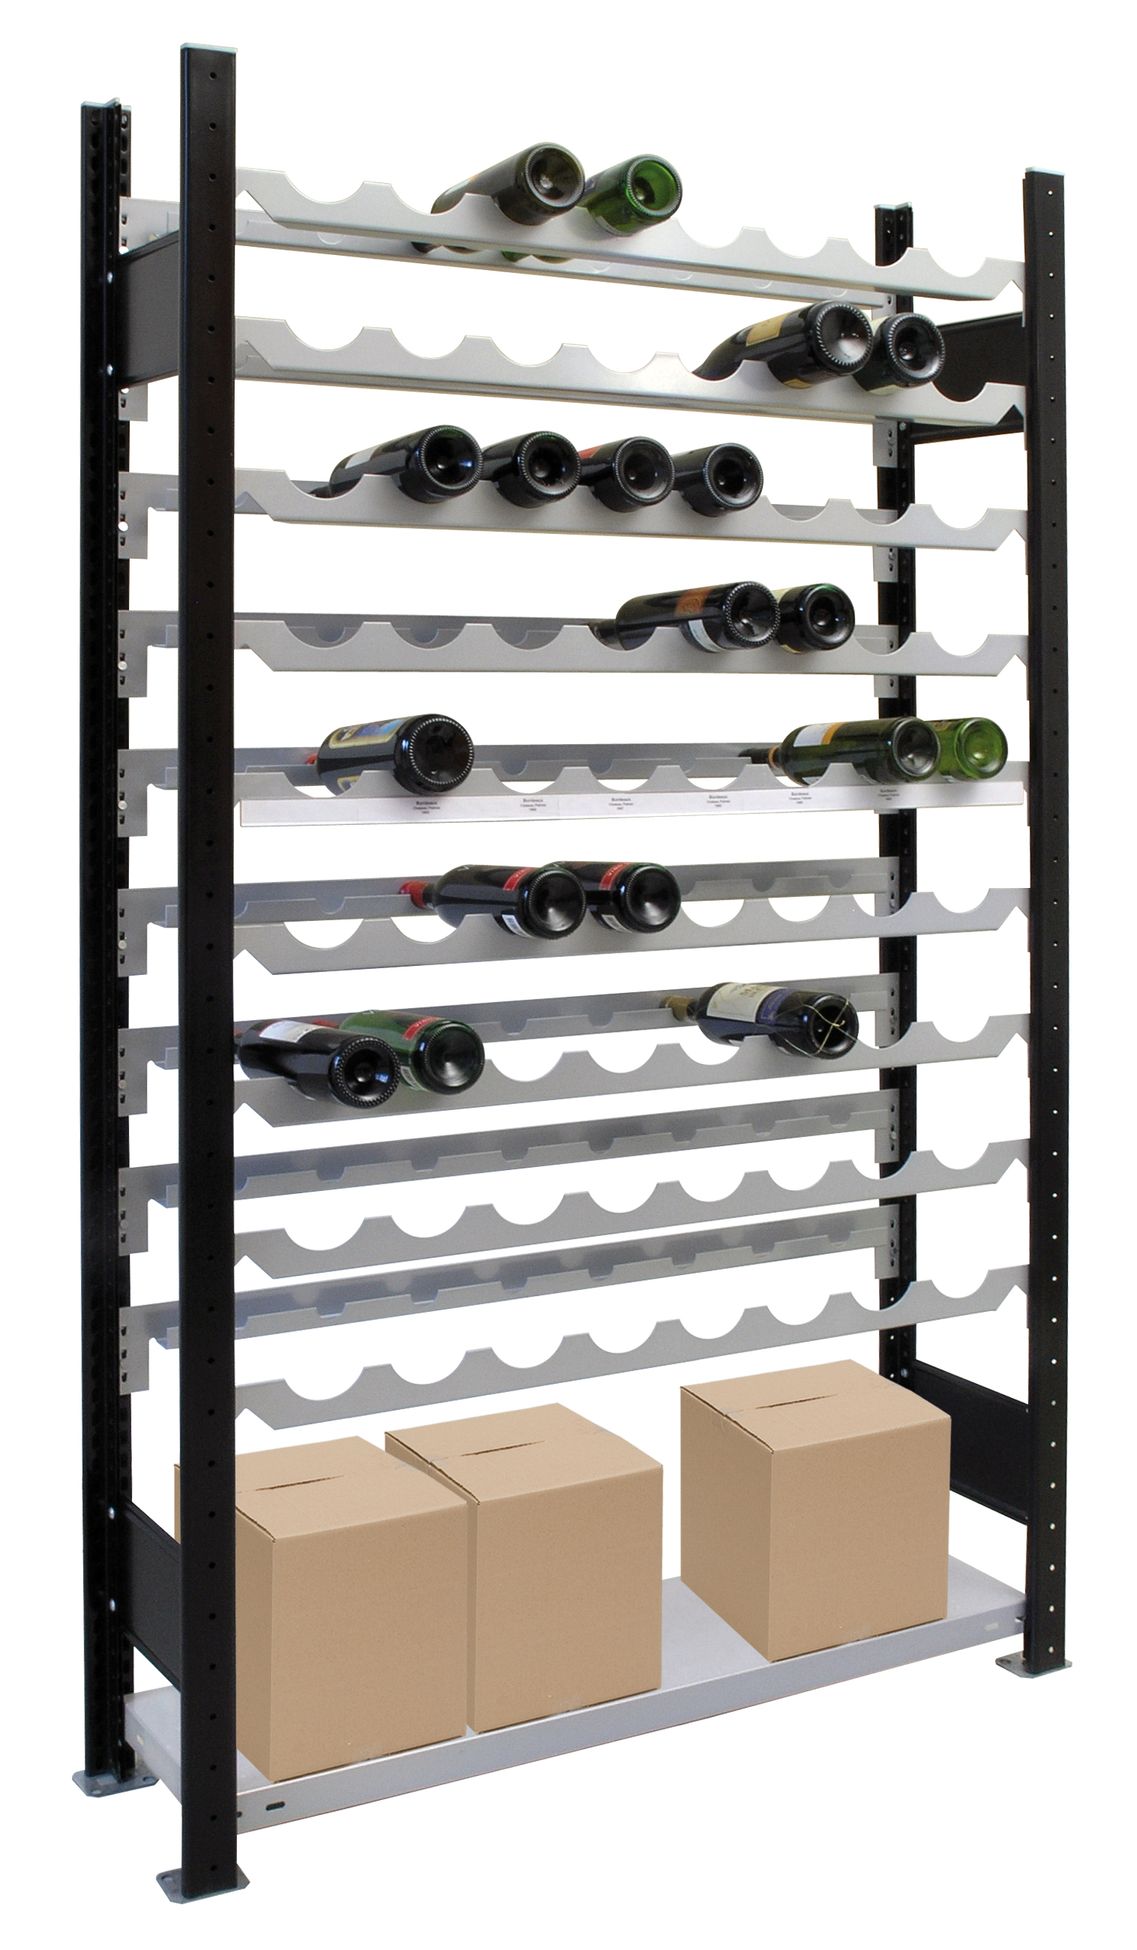 Weinregal für bis zu 96 Flaschen, 230x106x25 cm (HxBxT), Traglast pro Ebene 85 Kg, schwarz-silber